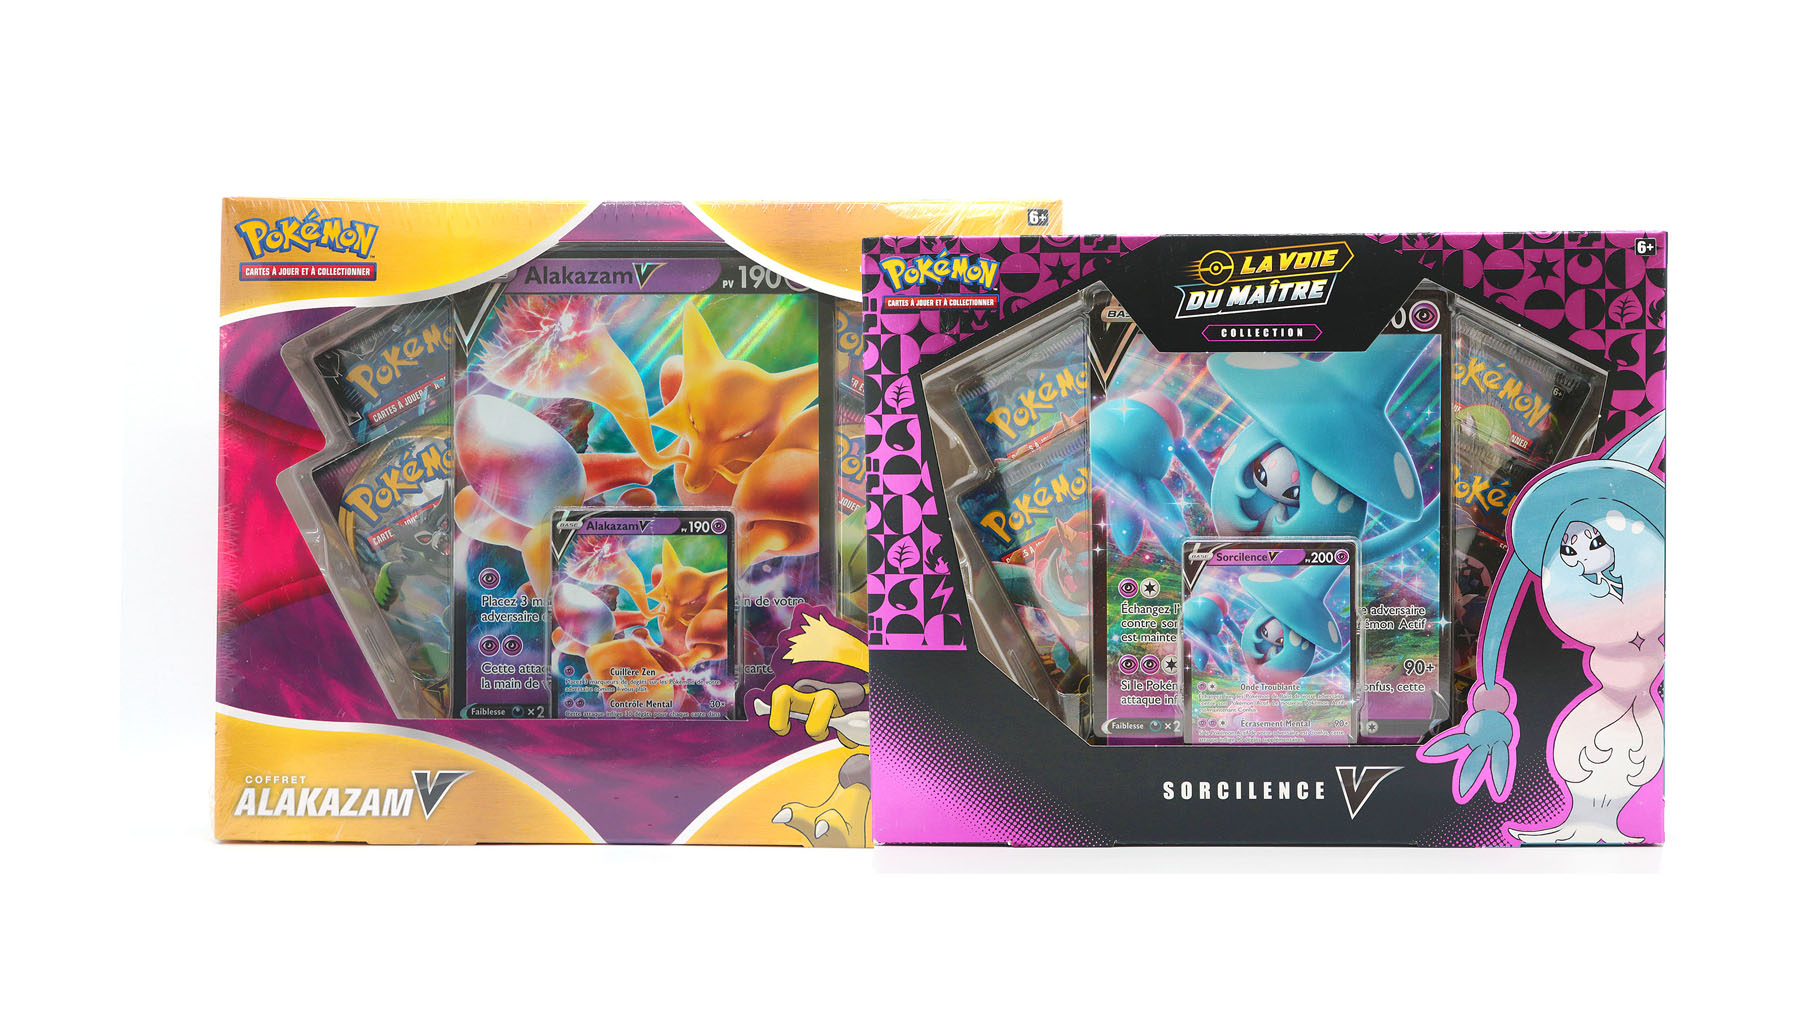 Pokémon Valisette Coffre de Collection Ultra Prisme